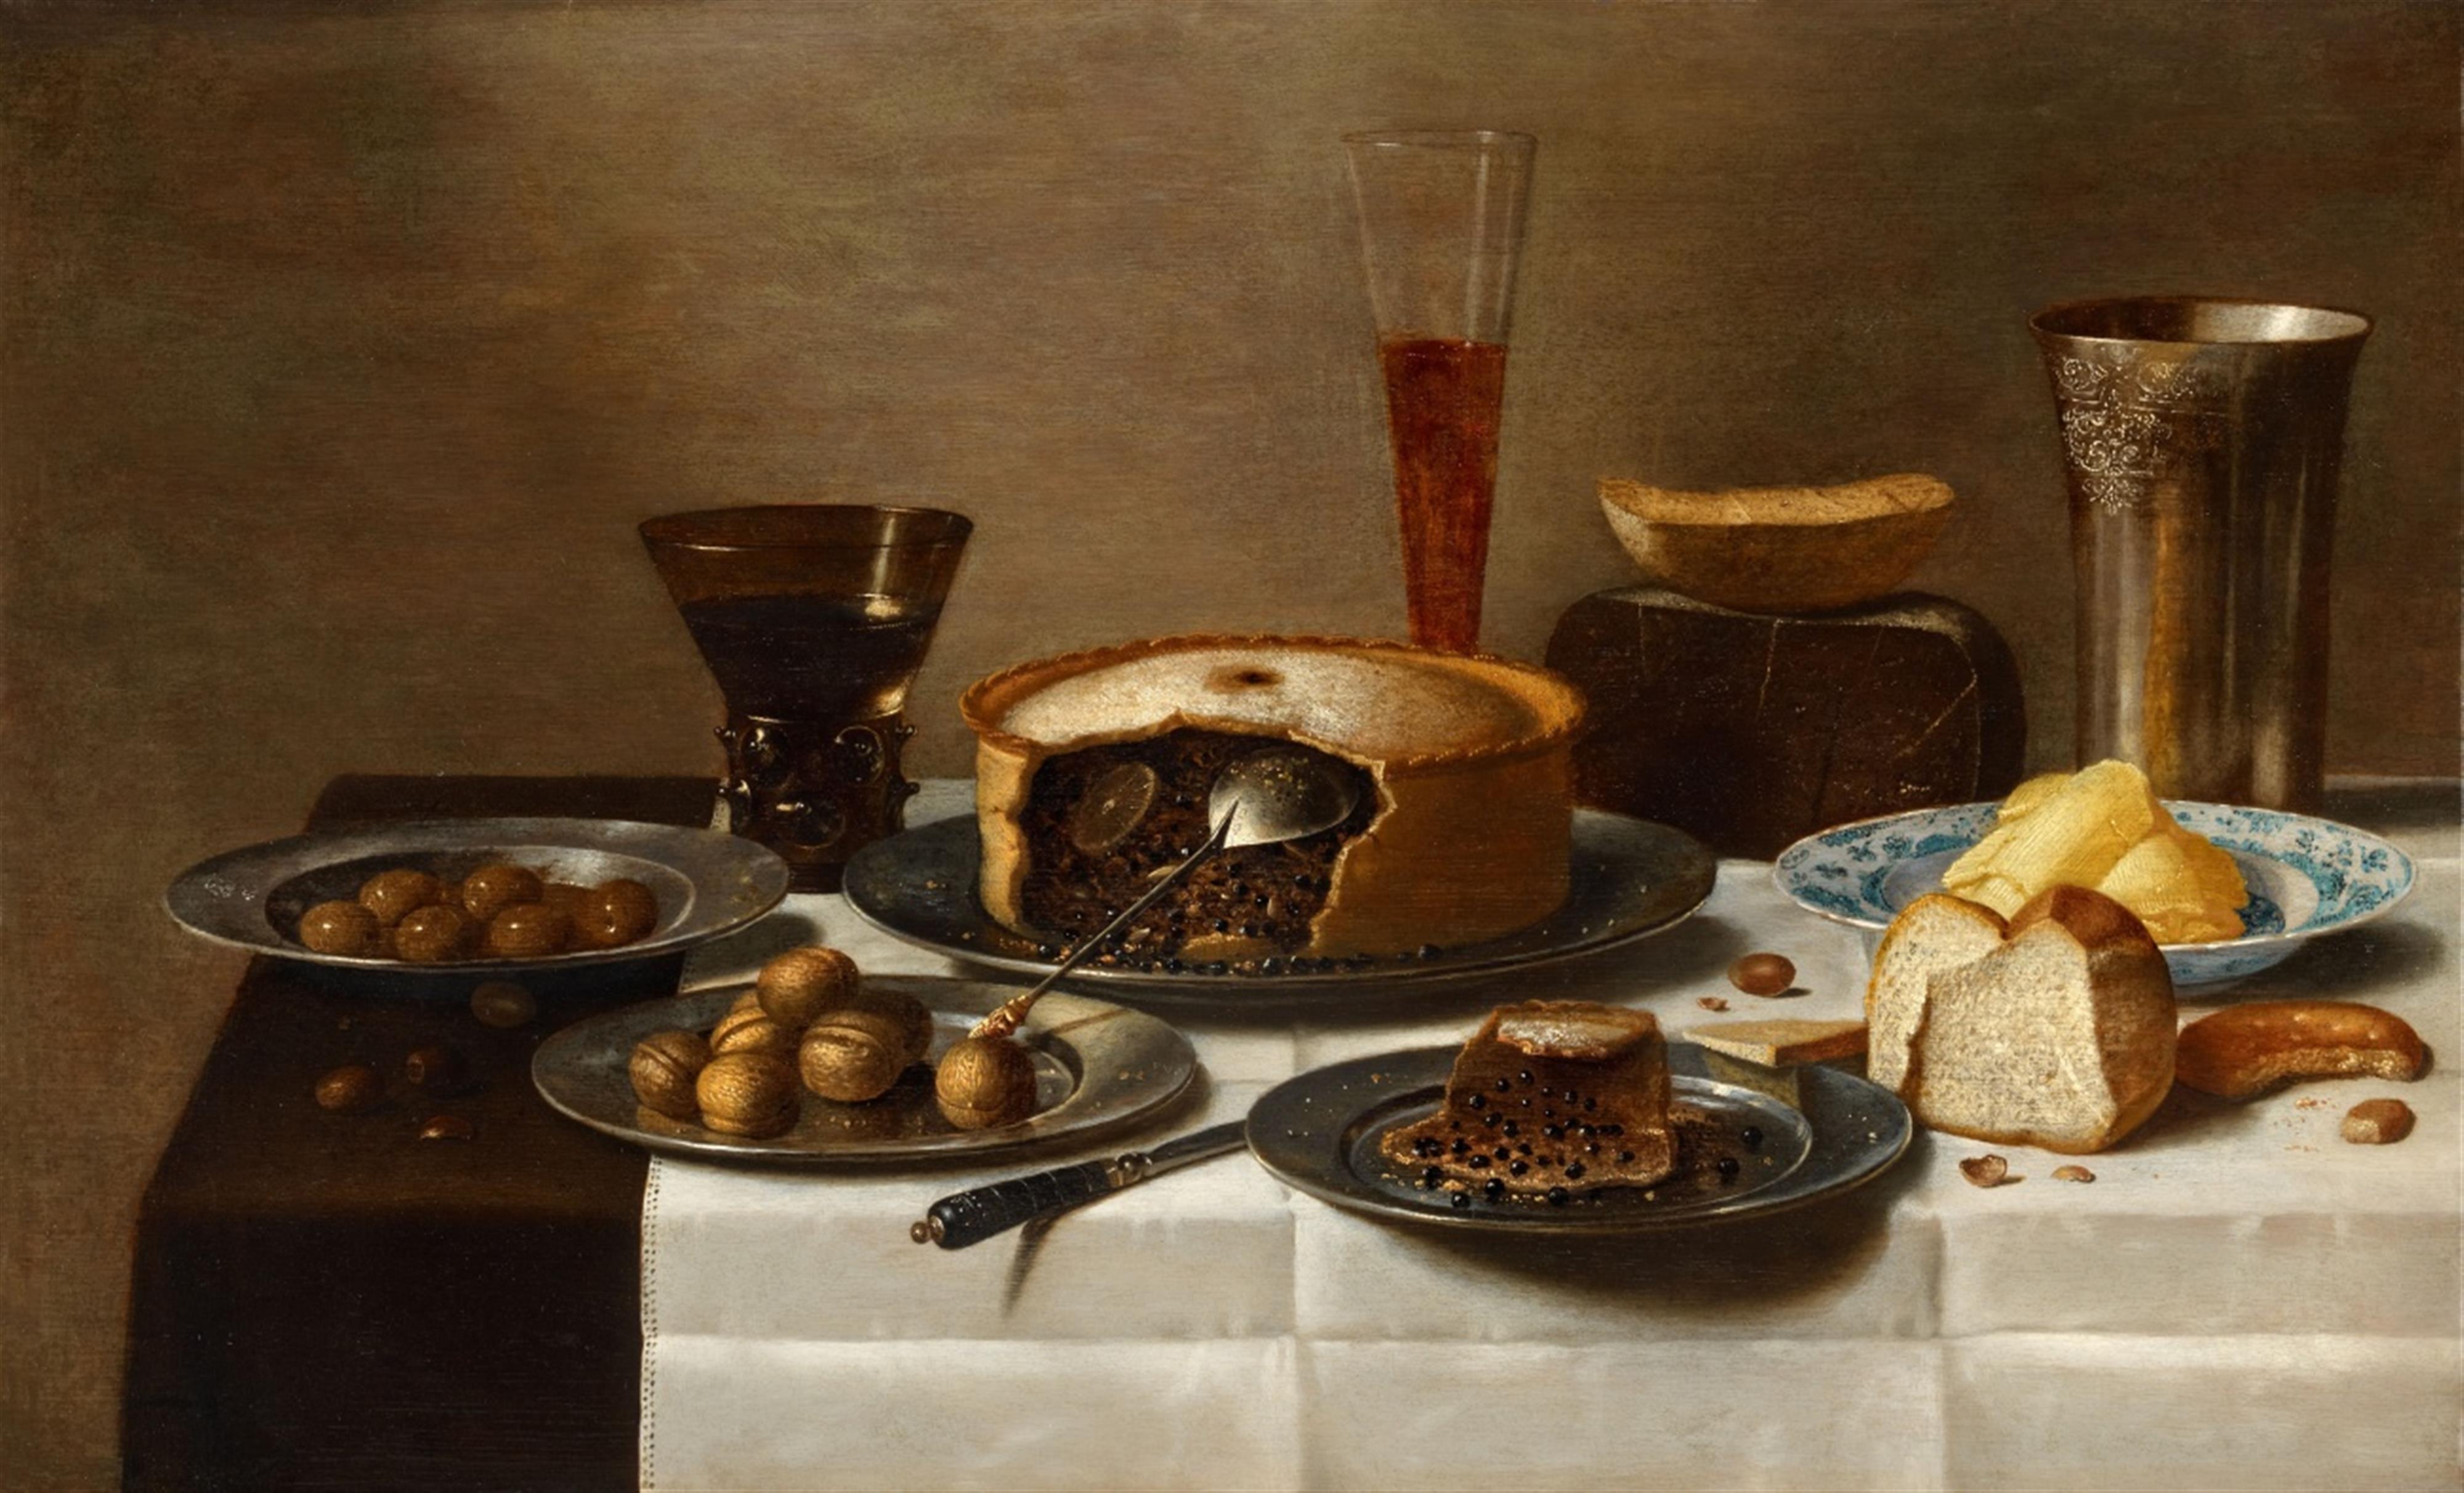 Floris van Schooten - Stillleben mit Pastete, Brot, Nüssen und Gefäßen - image-1